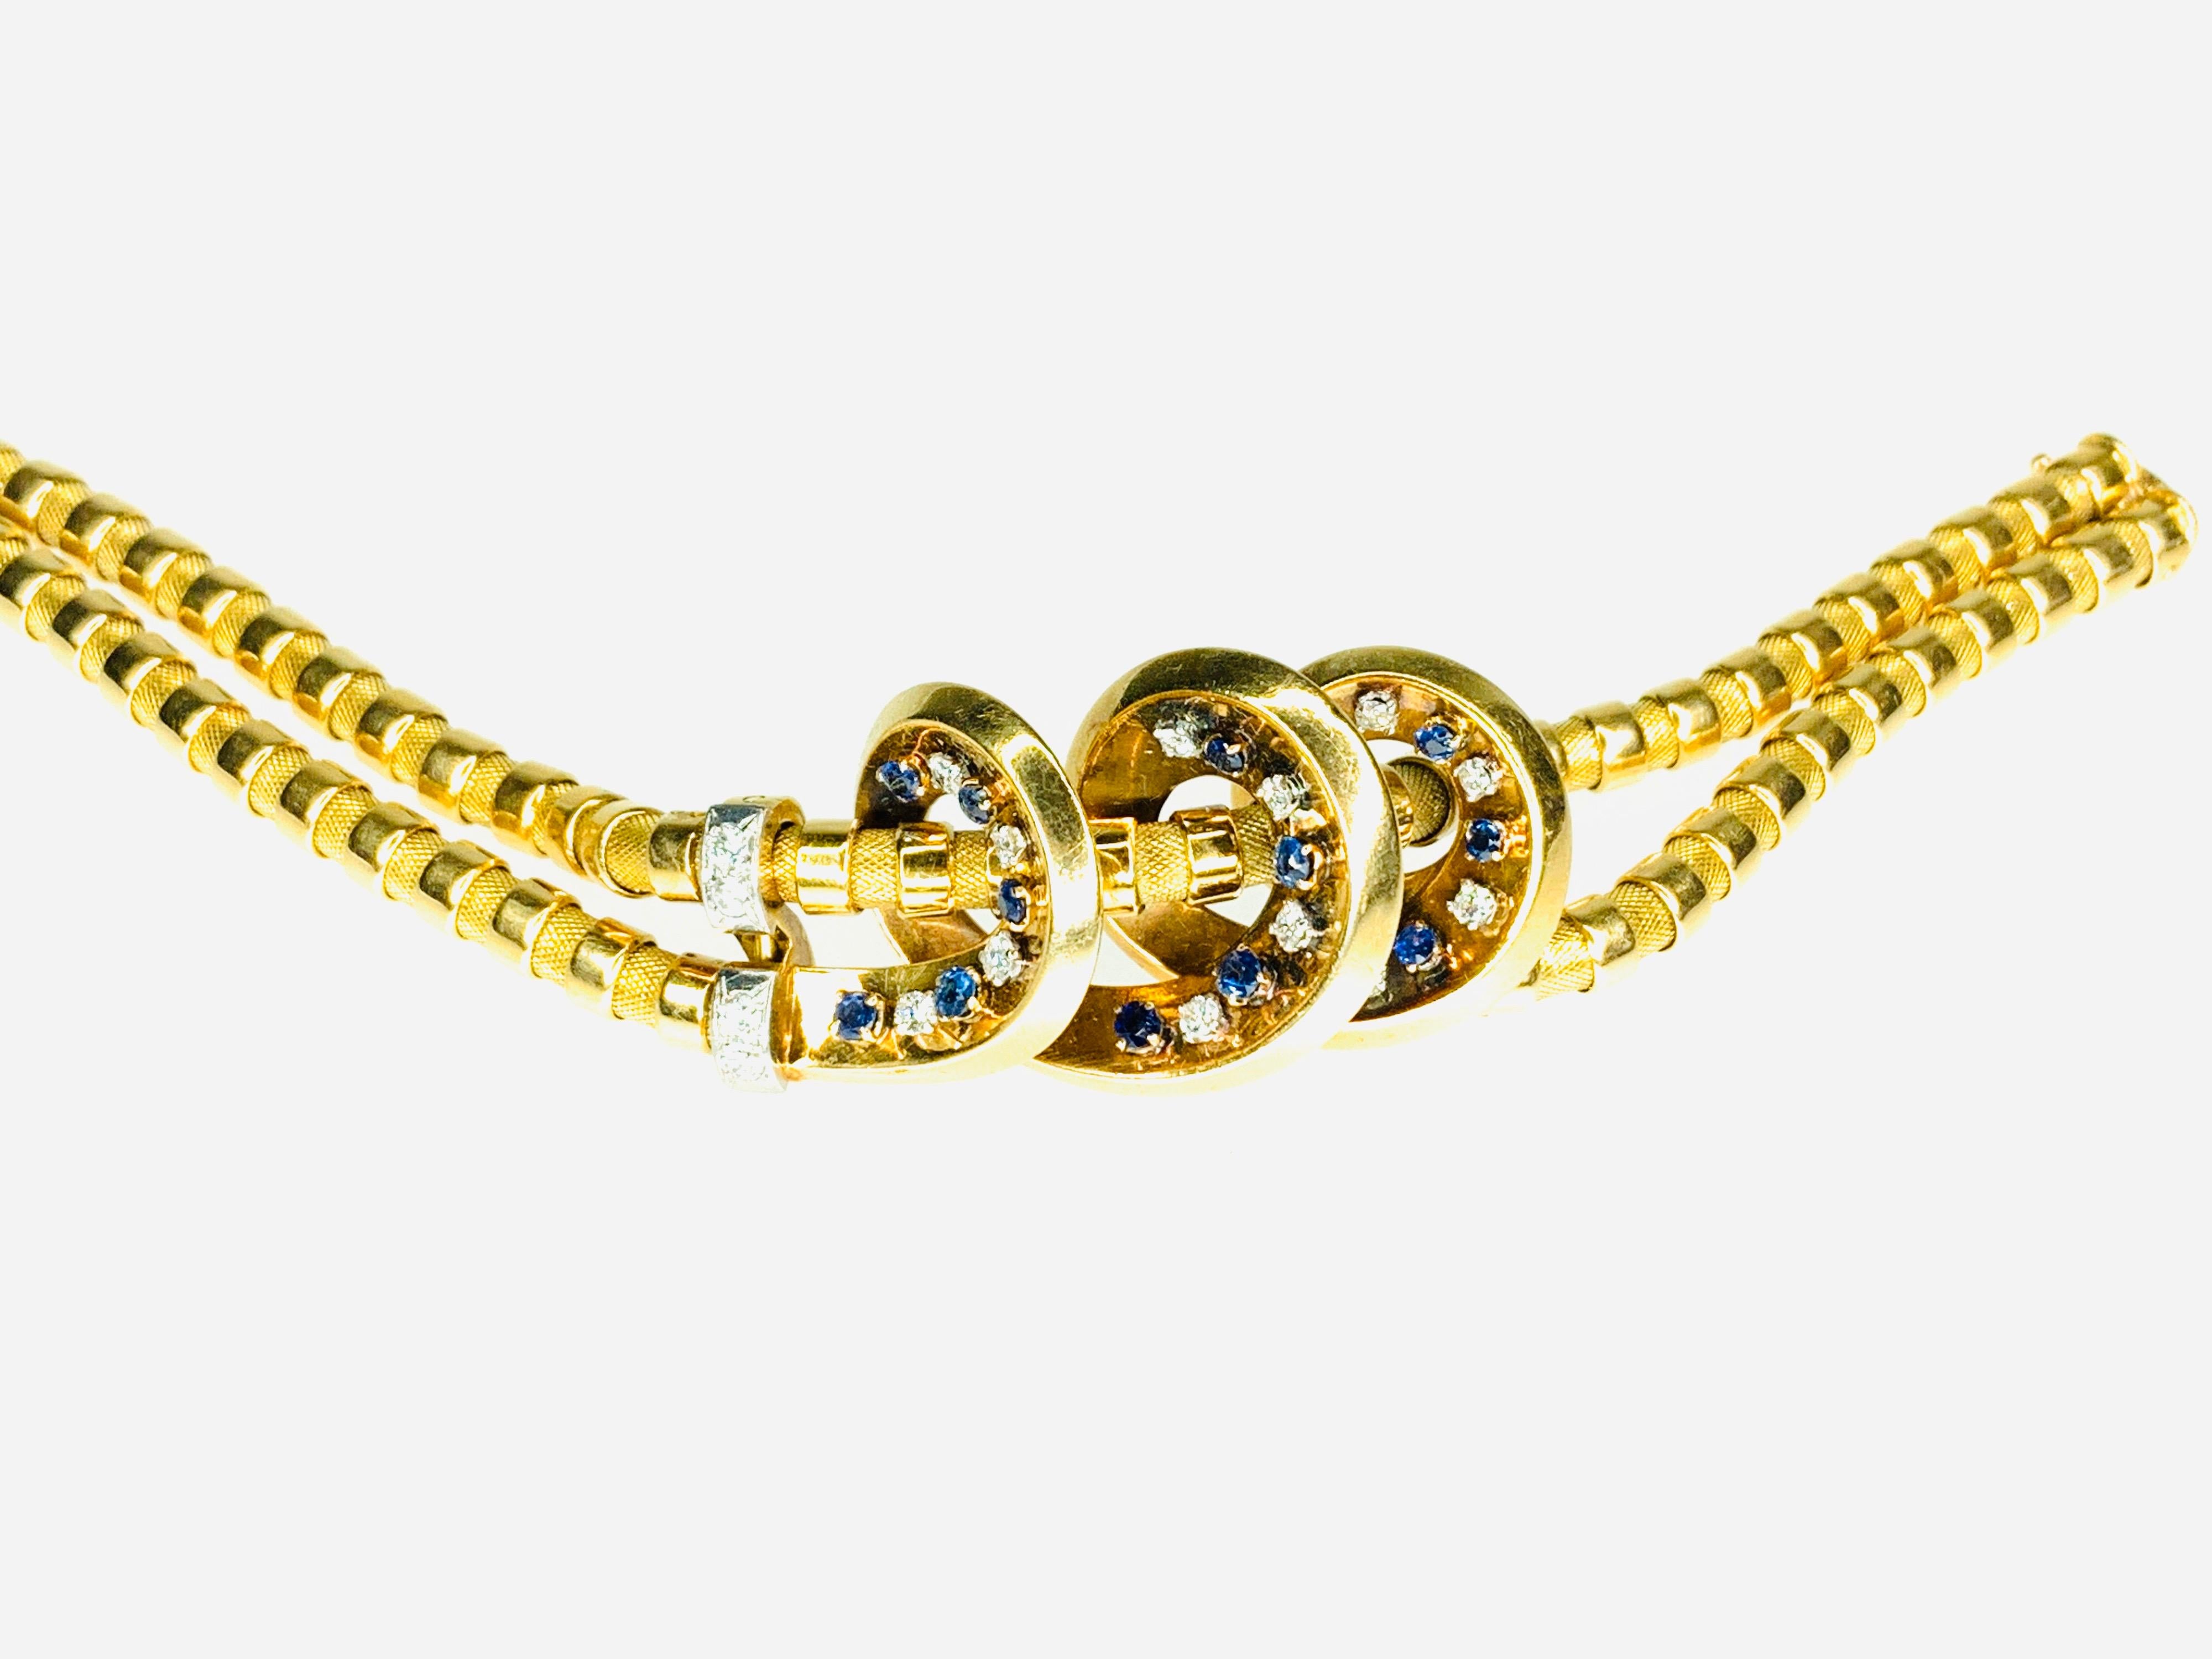 Gemolithos, Retro-Armband mit Saphiren und Diamanten, von LaCloche Fres, 1940er Jahre. Gold 18K ilustriert auf dem Buch 